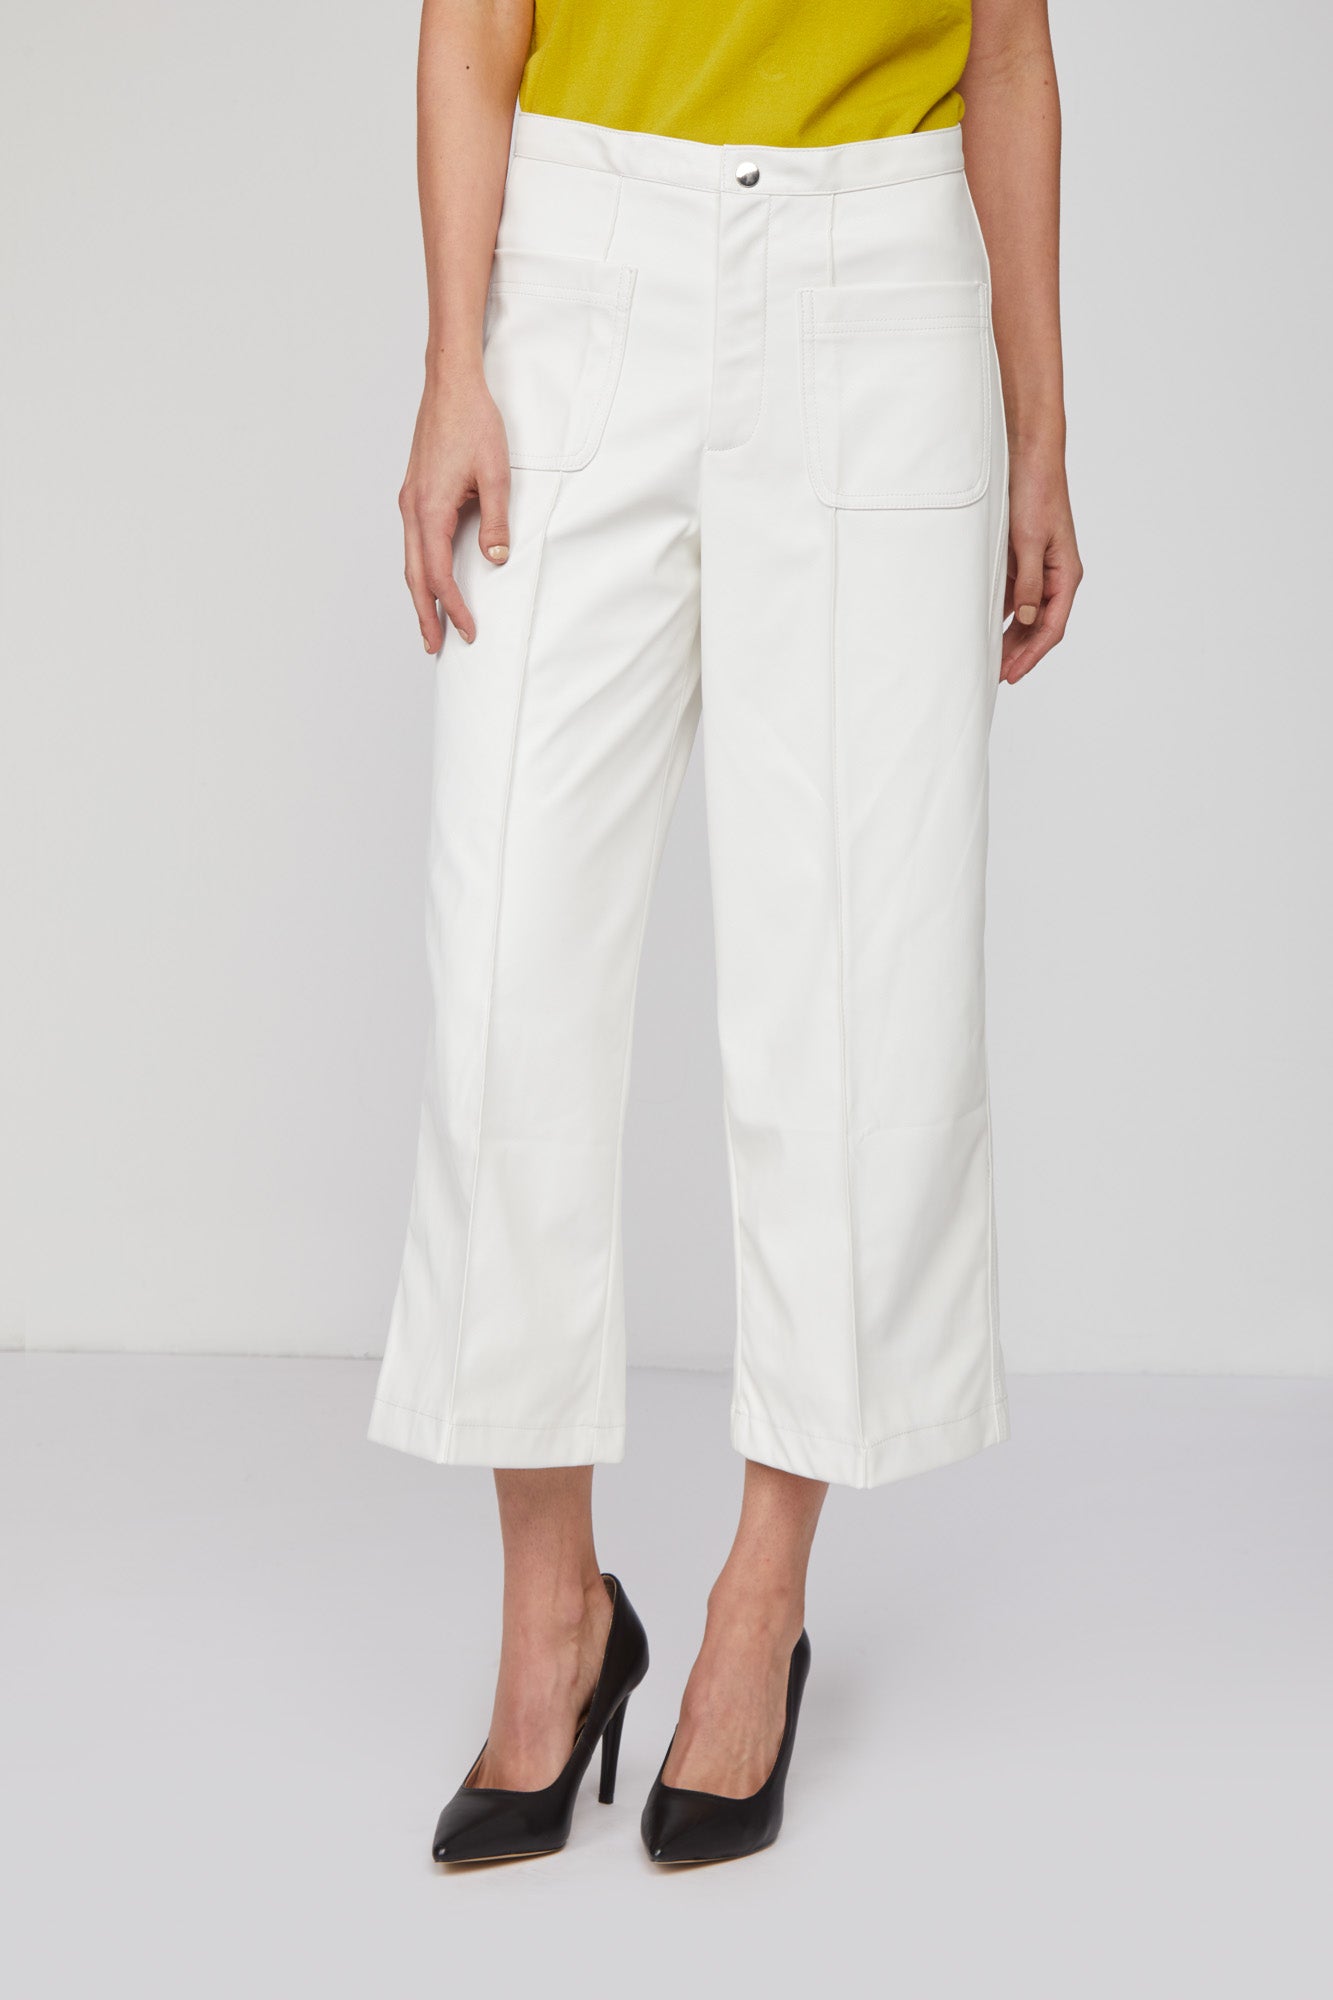 TWINSET Pantalone Bianco Pelle